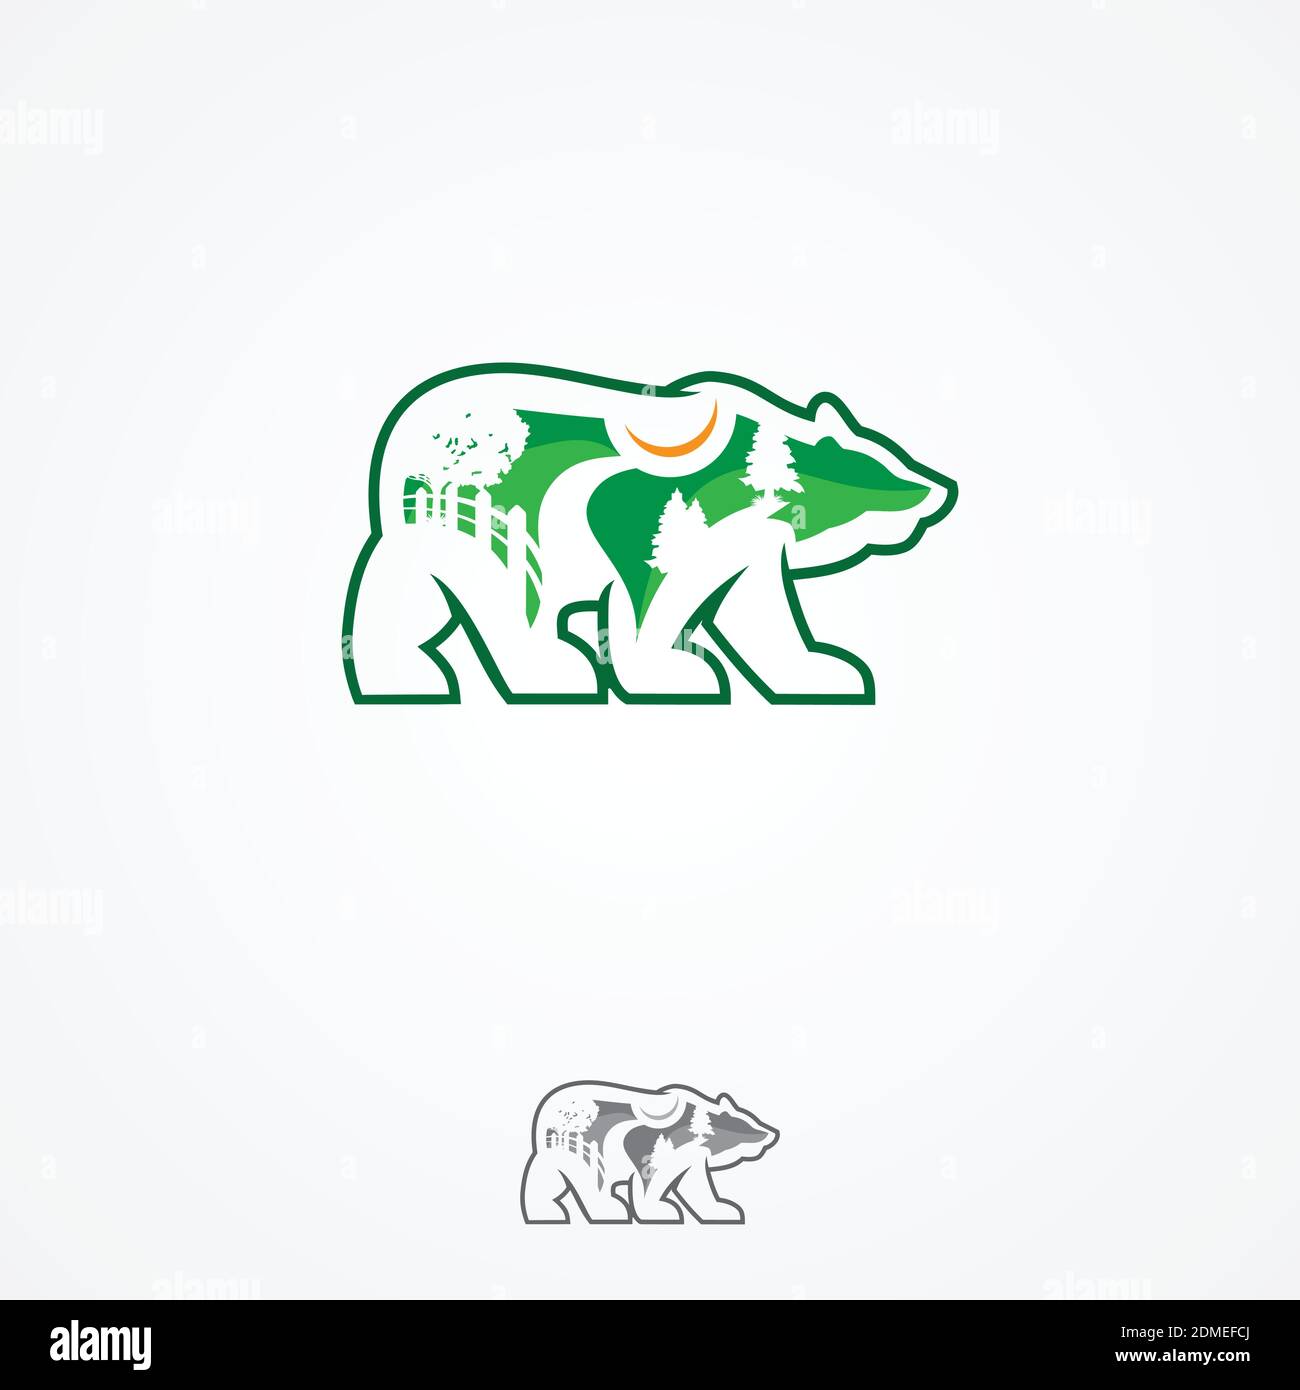 Landschaftsdesign Unternehmen oder grüne Landschaftsgestaltung Studio Ikone bilden einen Bären. Vektor-Symbol der grünen Bäume in Waldpark oder Wald für die Landschaftsgestaltung Stock Vektor